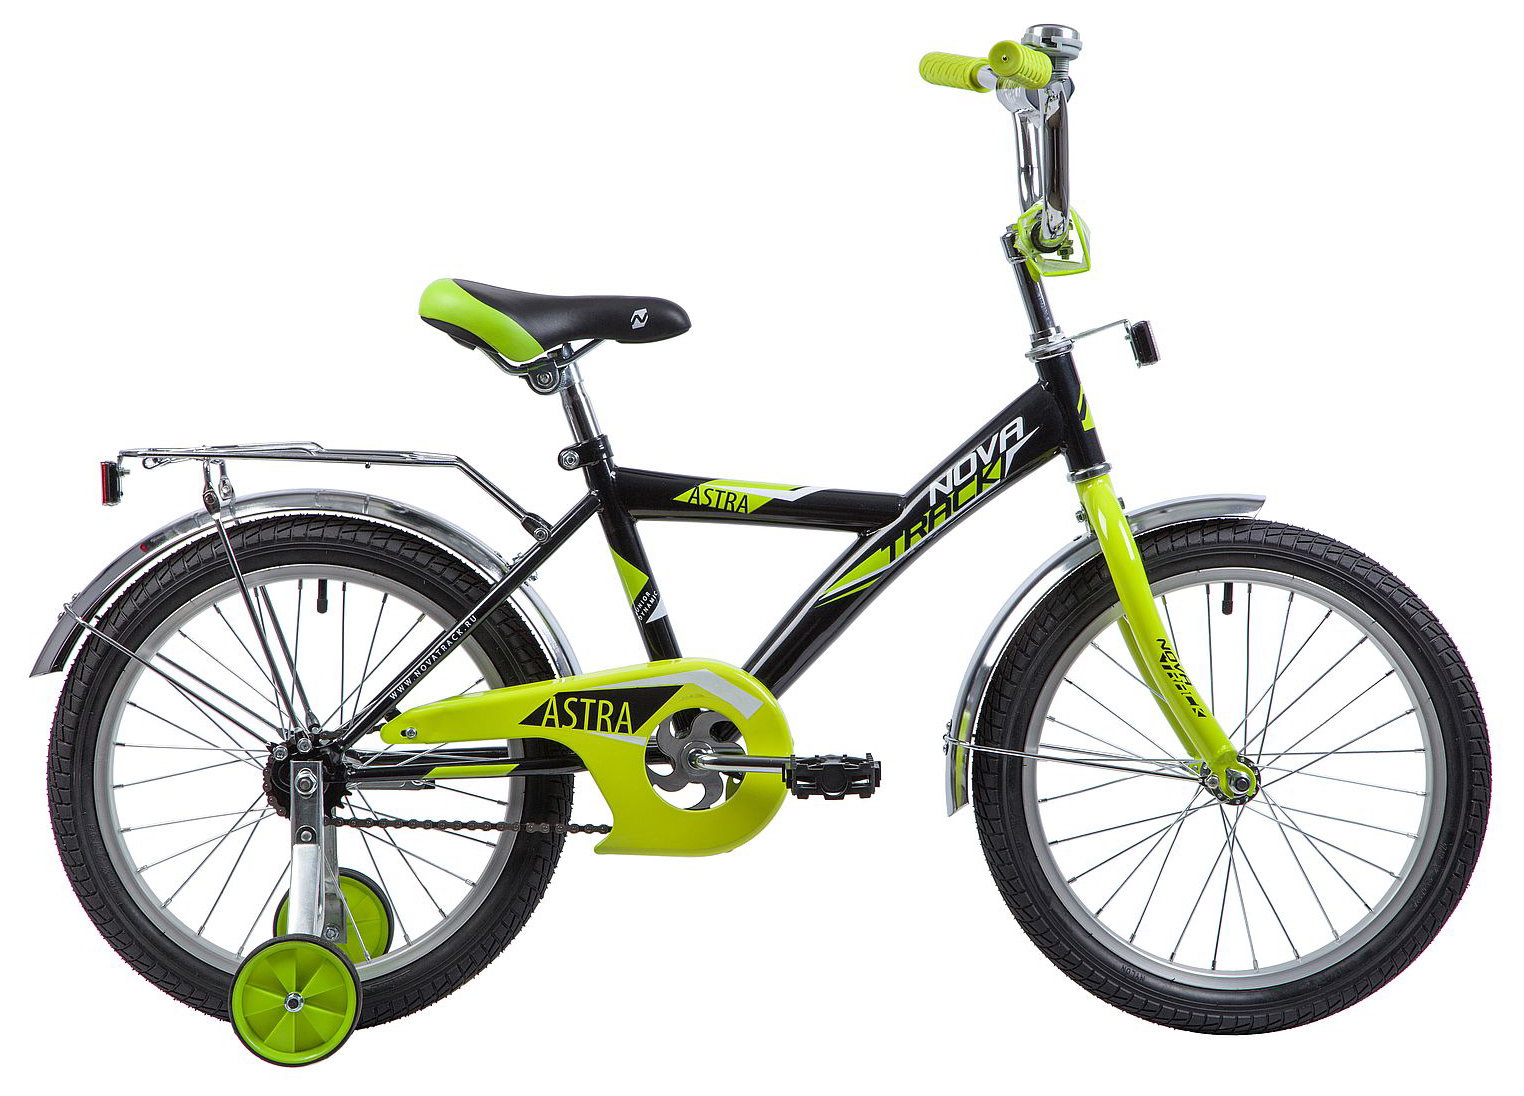  Отзывы о Детском велосипеде Novatrack Astra 18 2019